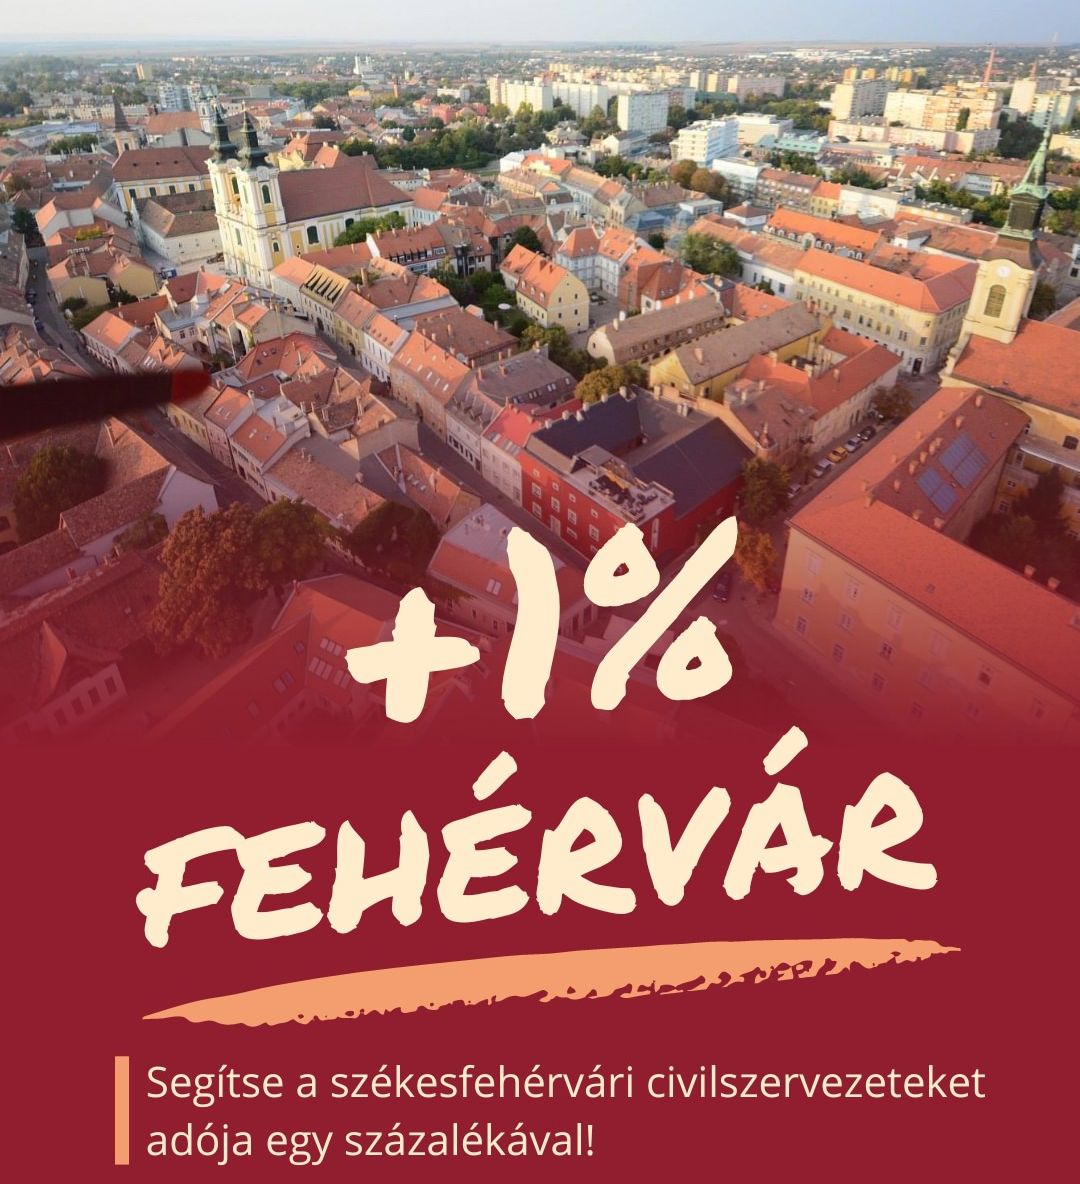 +1 százalék Fehérvárnak – segítsük a székesfehérvári civil szervezeteket adónk egy százalékával